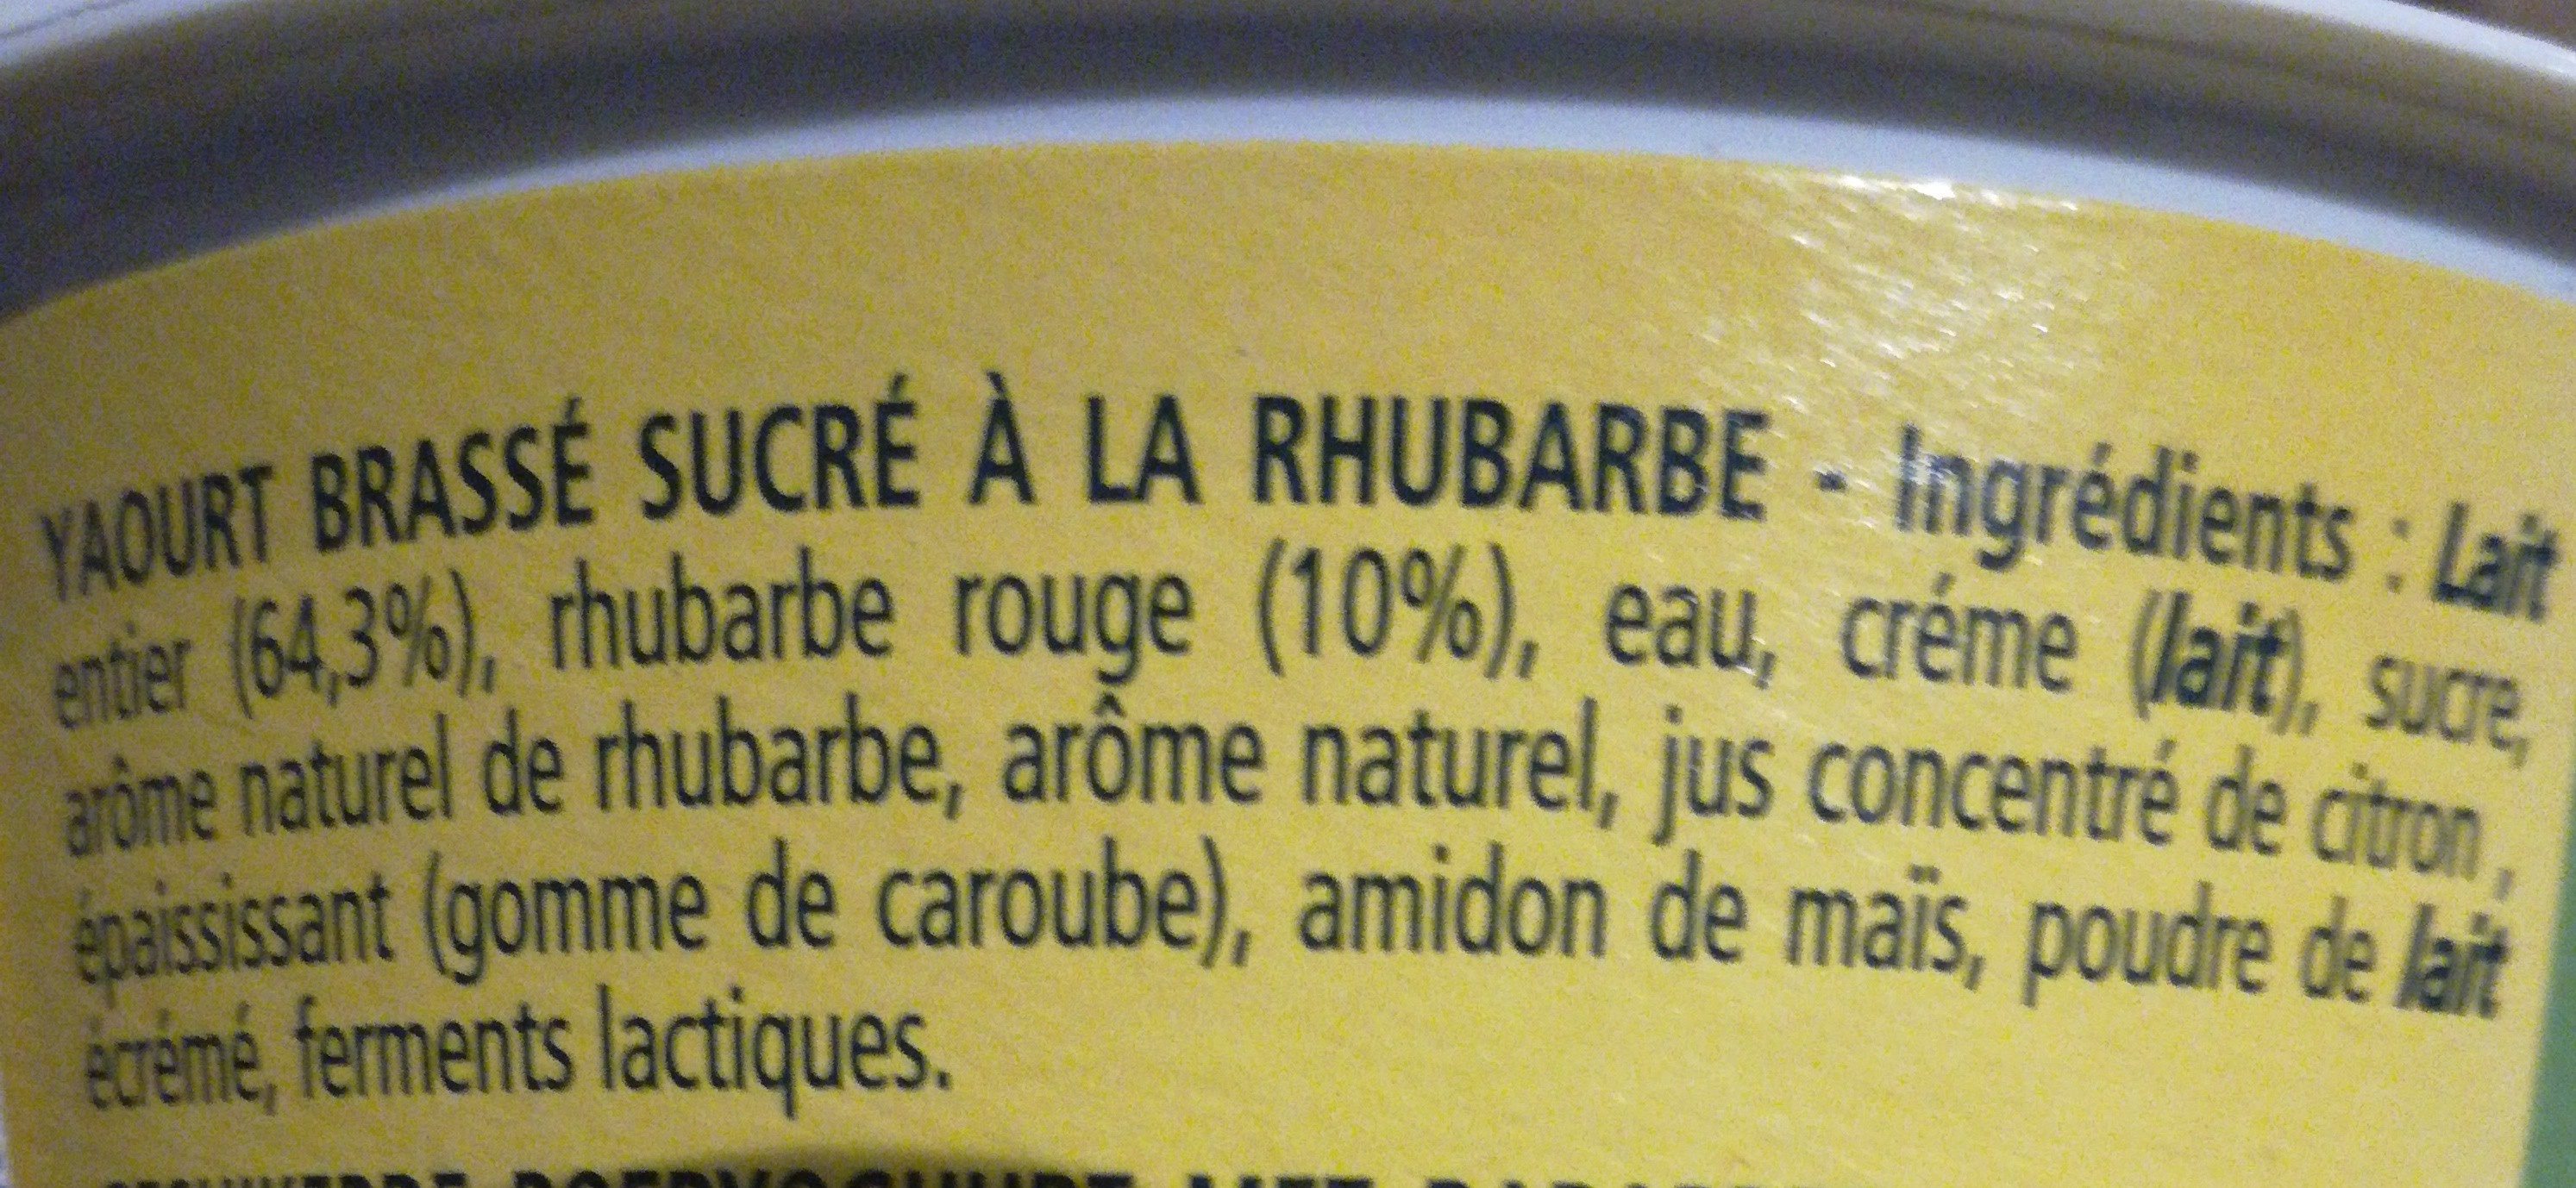 Le Yaourt à la Rhubarbe 100% naturel - Ingrédients